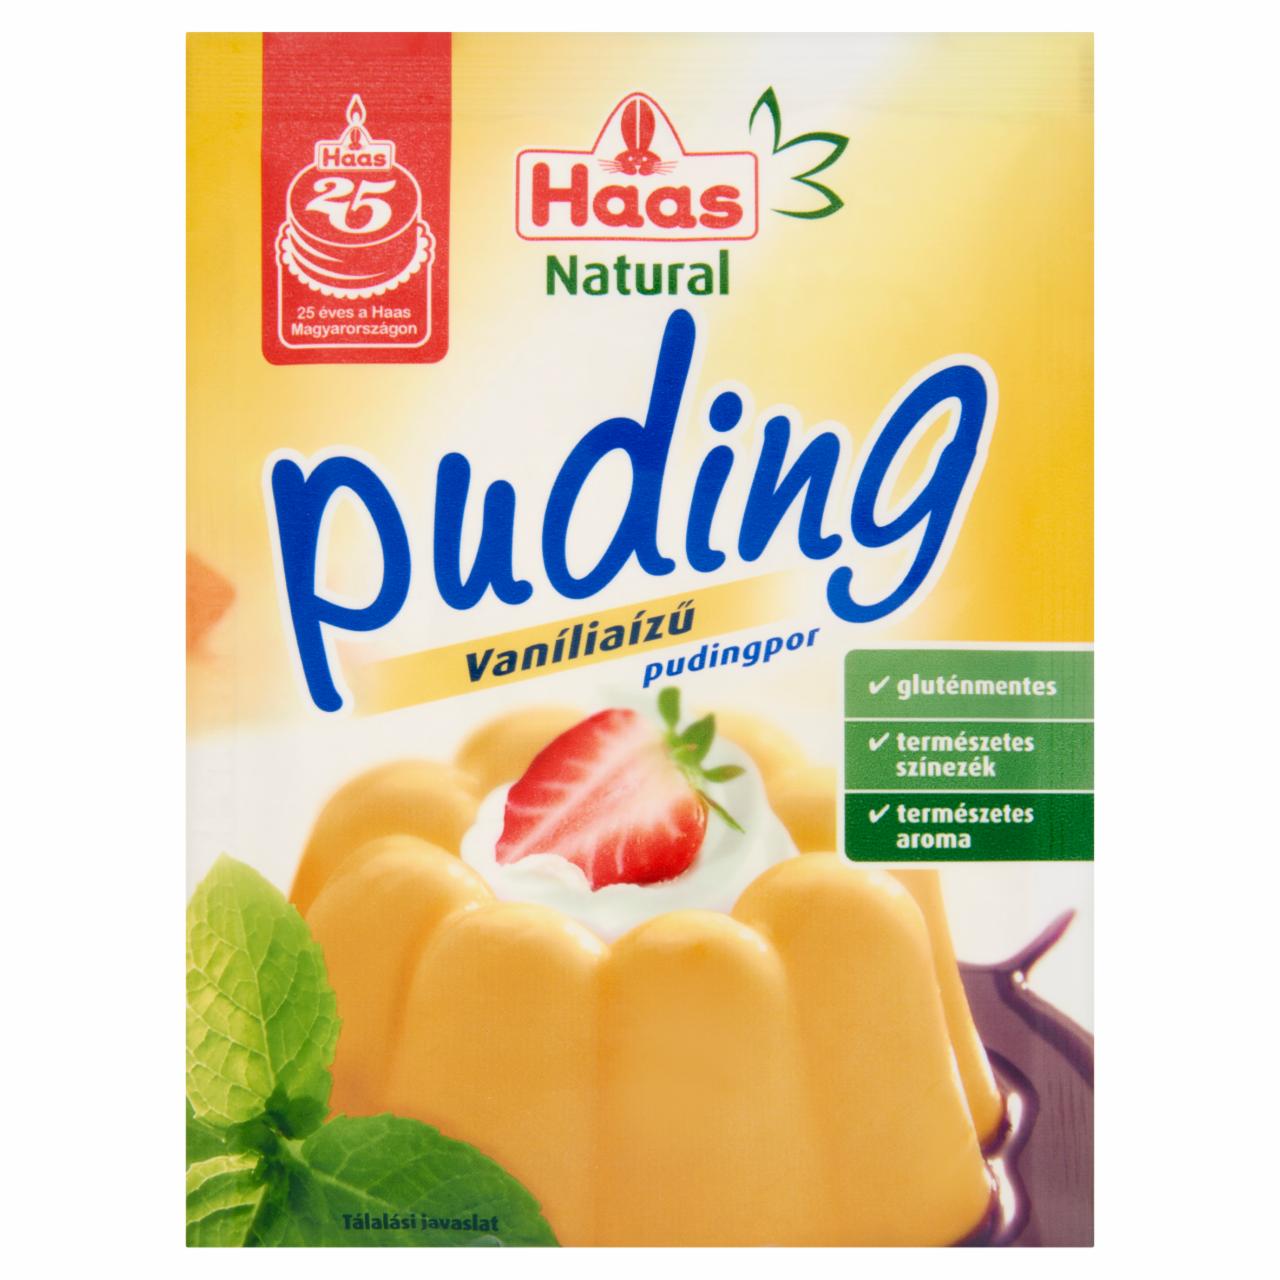 Képek - Haas Natural gluténmentes vaníliaízű pudingpor 40 g